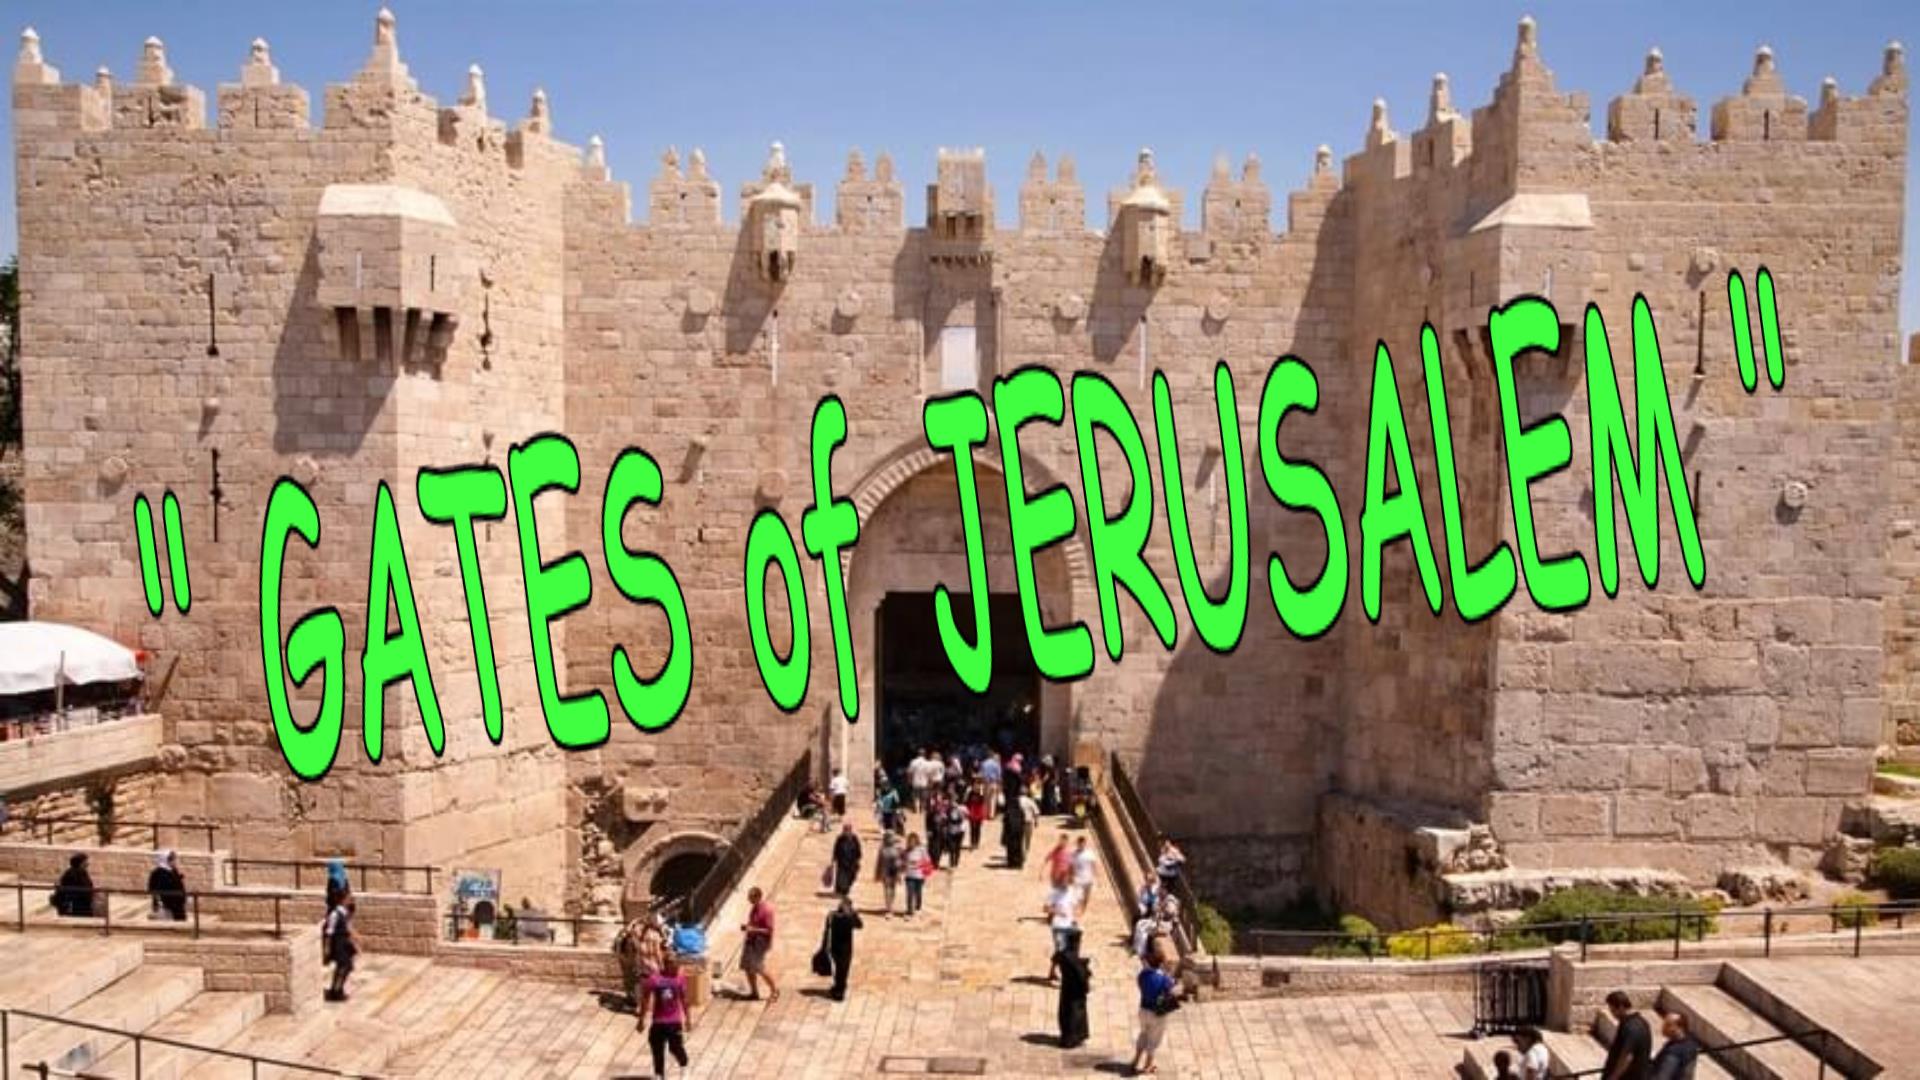 GATES OF JERUSALEM